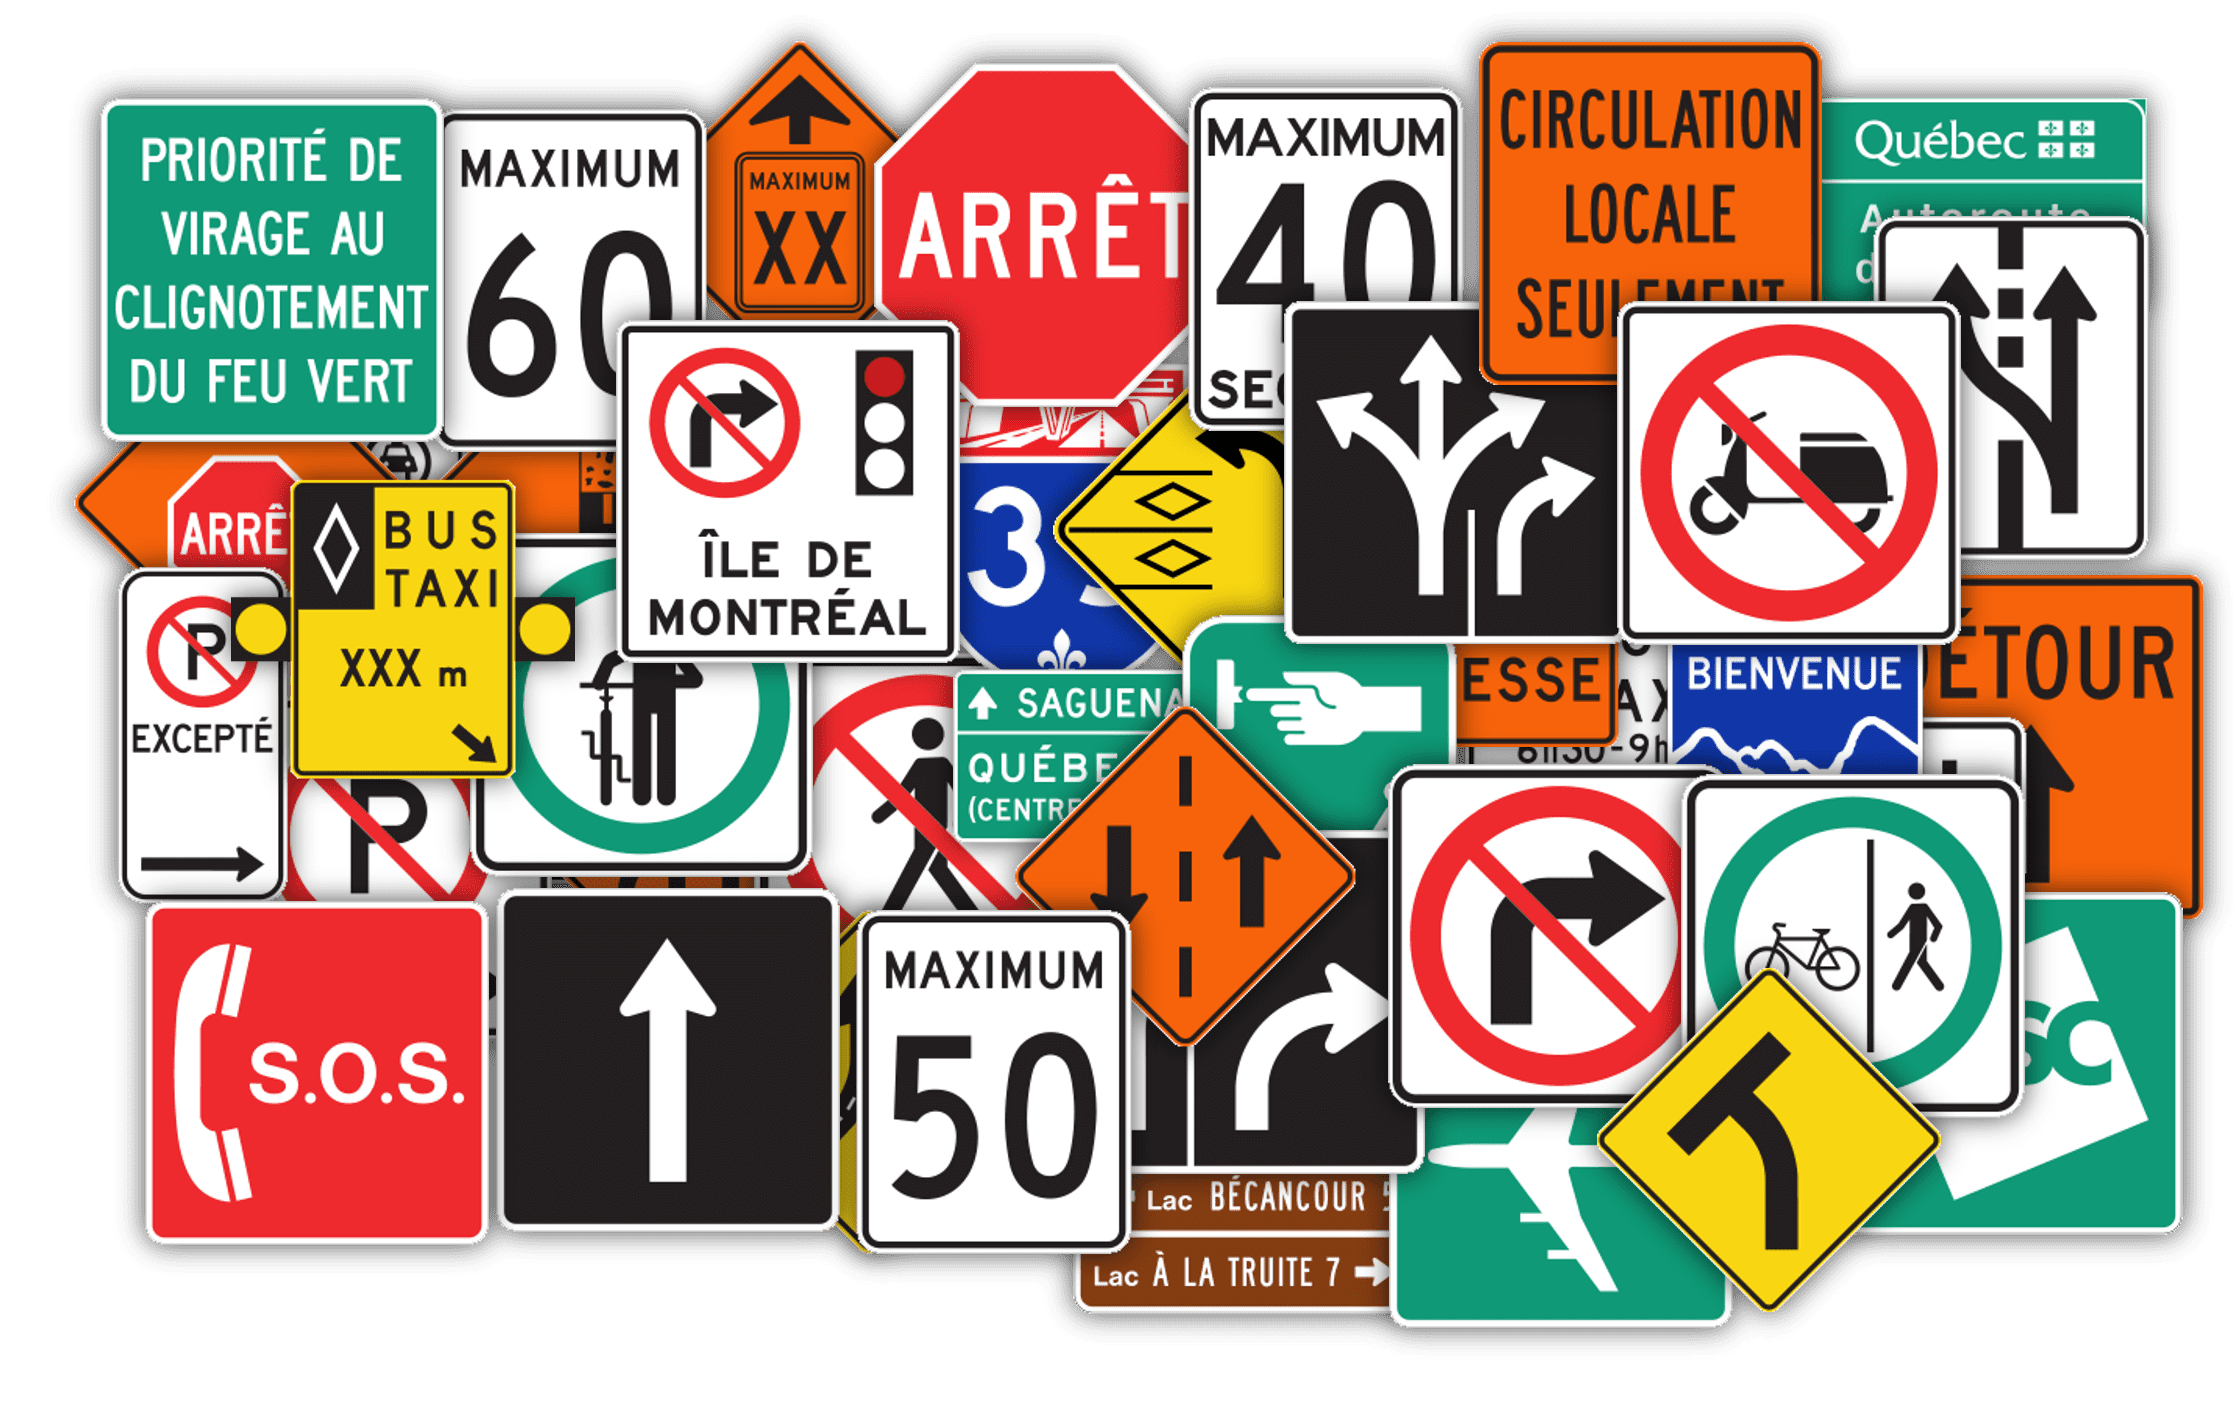 Quebec signage